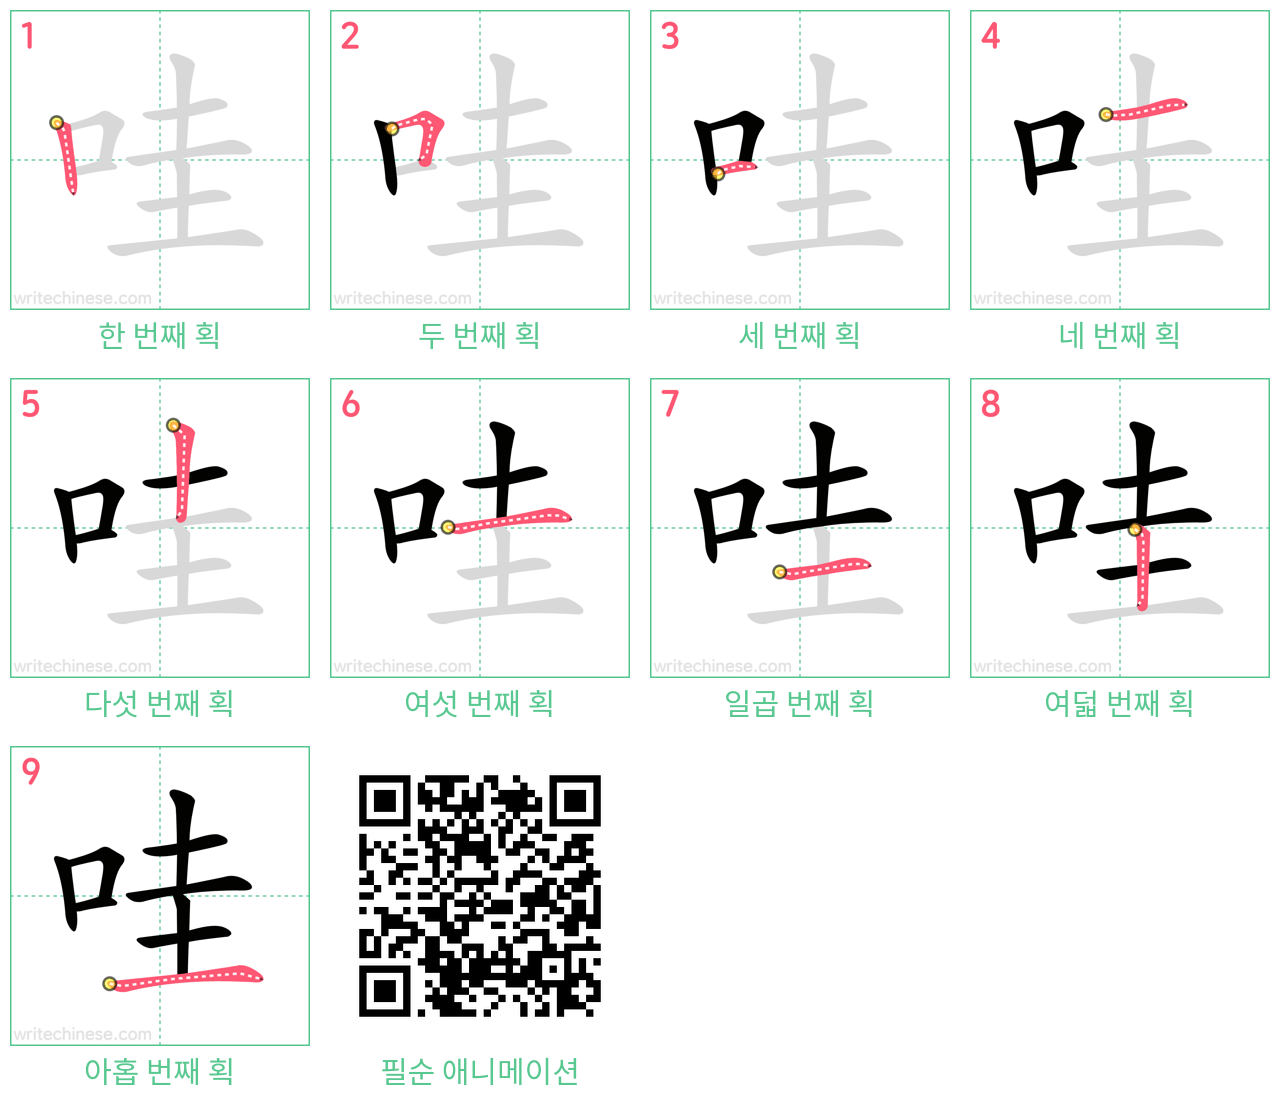 哇 step-by-step stroke order diagrams